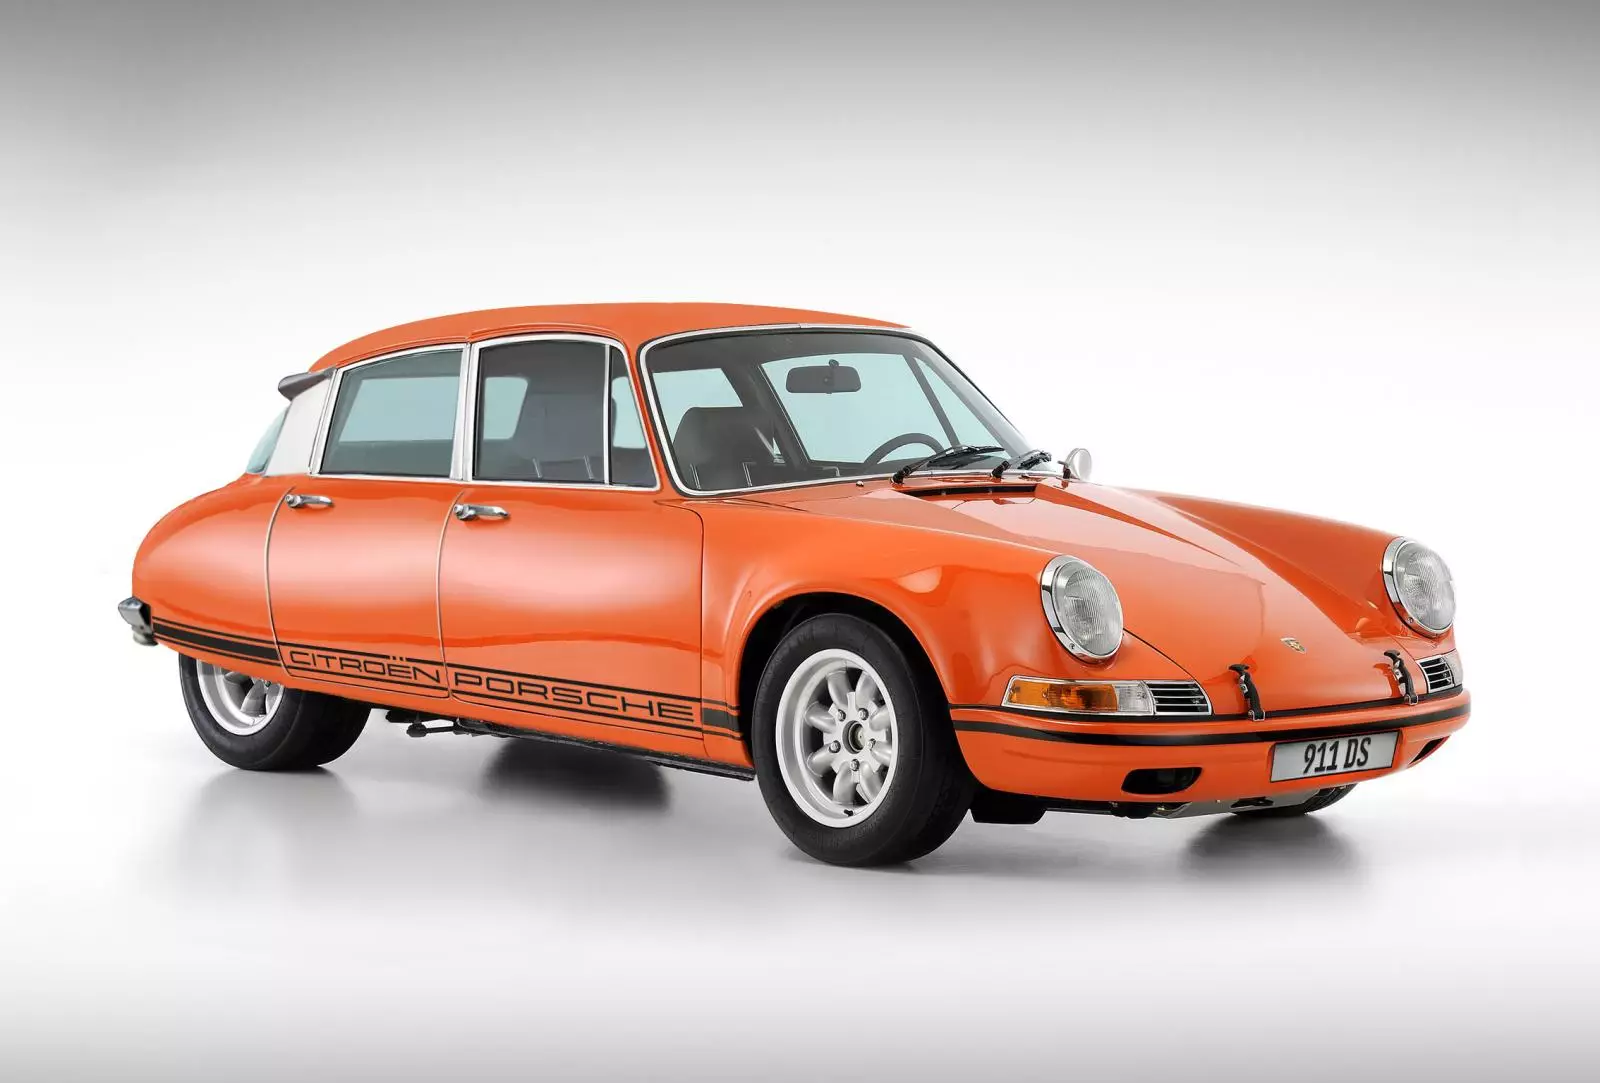 Porsche 911 + Citroen DS = Vintage Panamera?